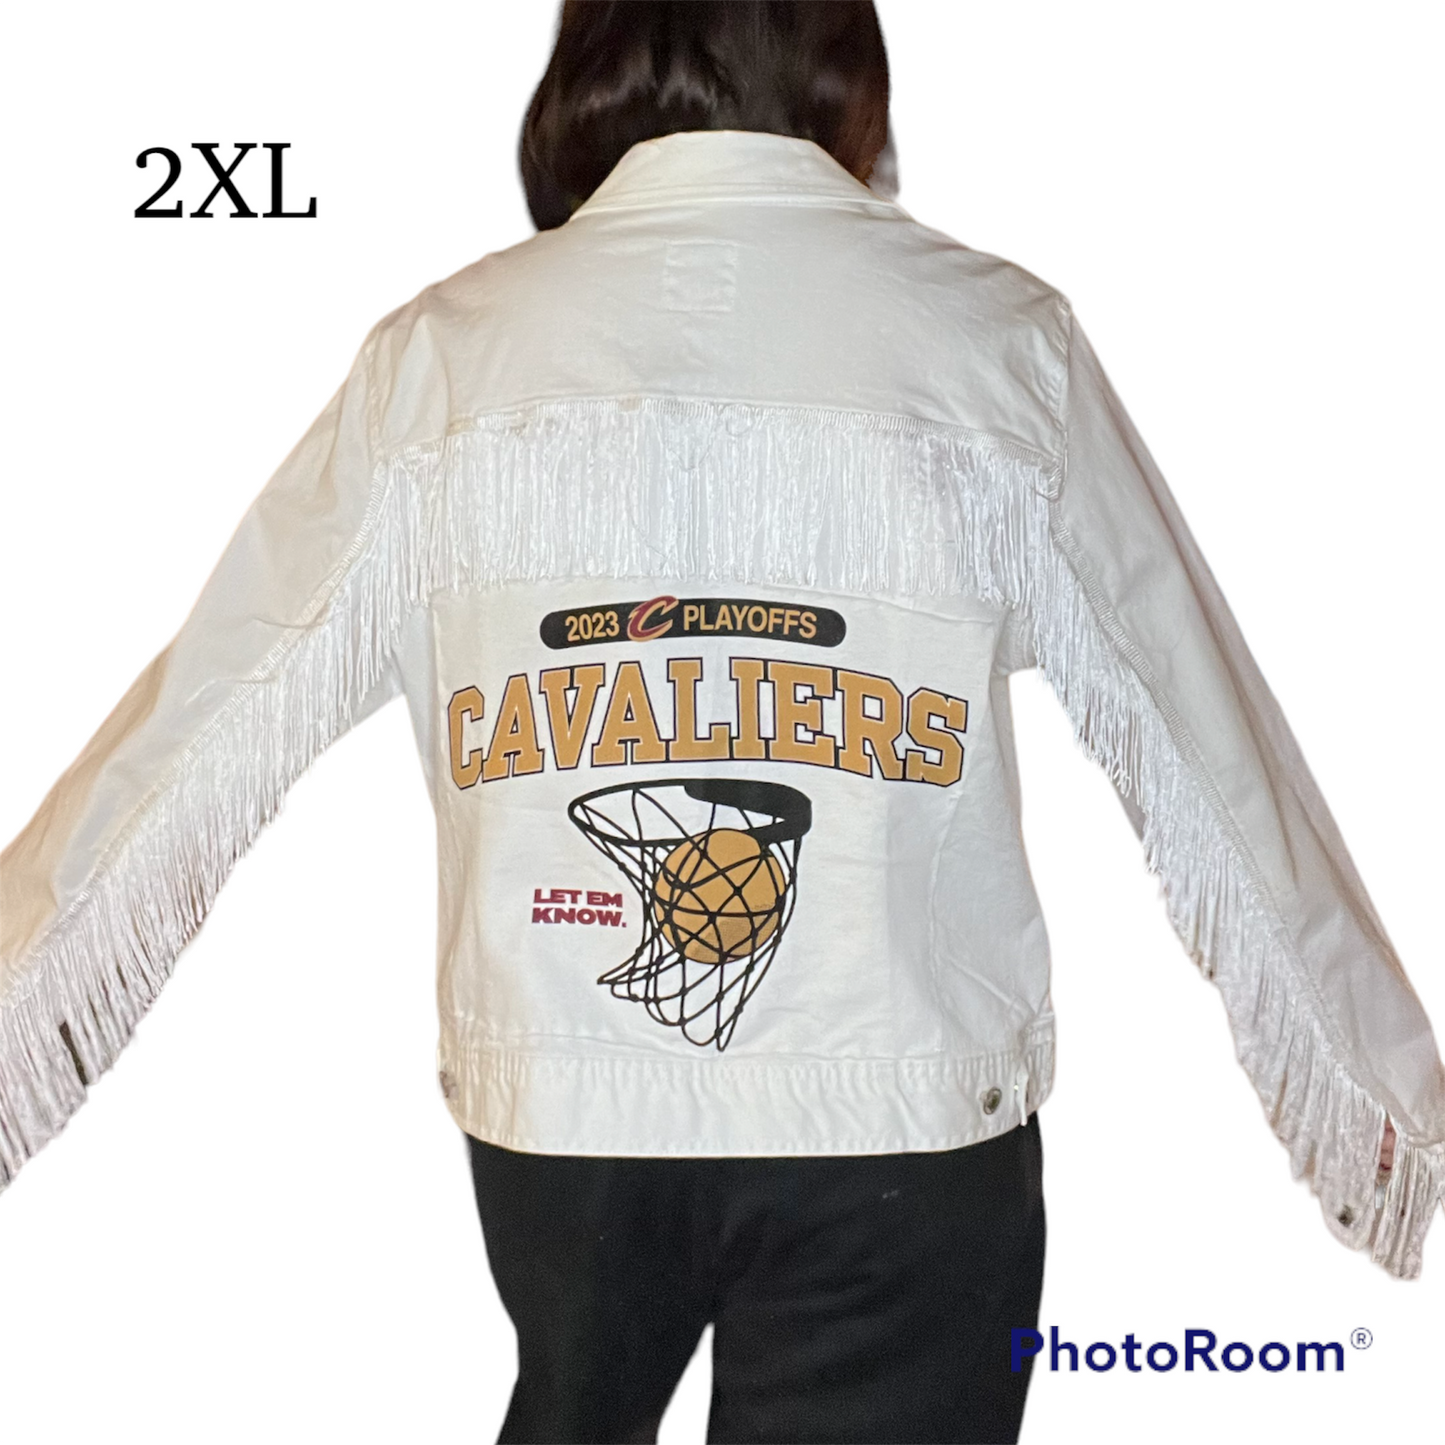 Cavaliers fringe jacket